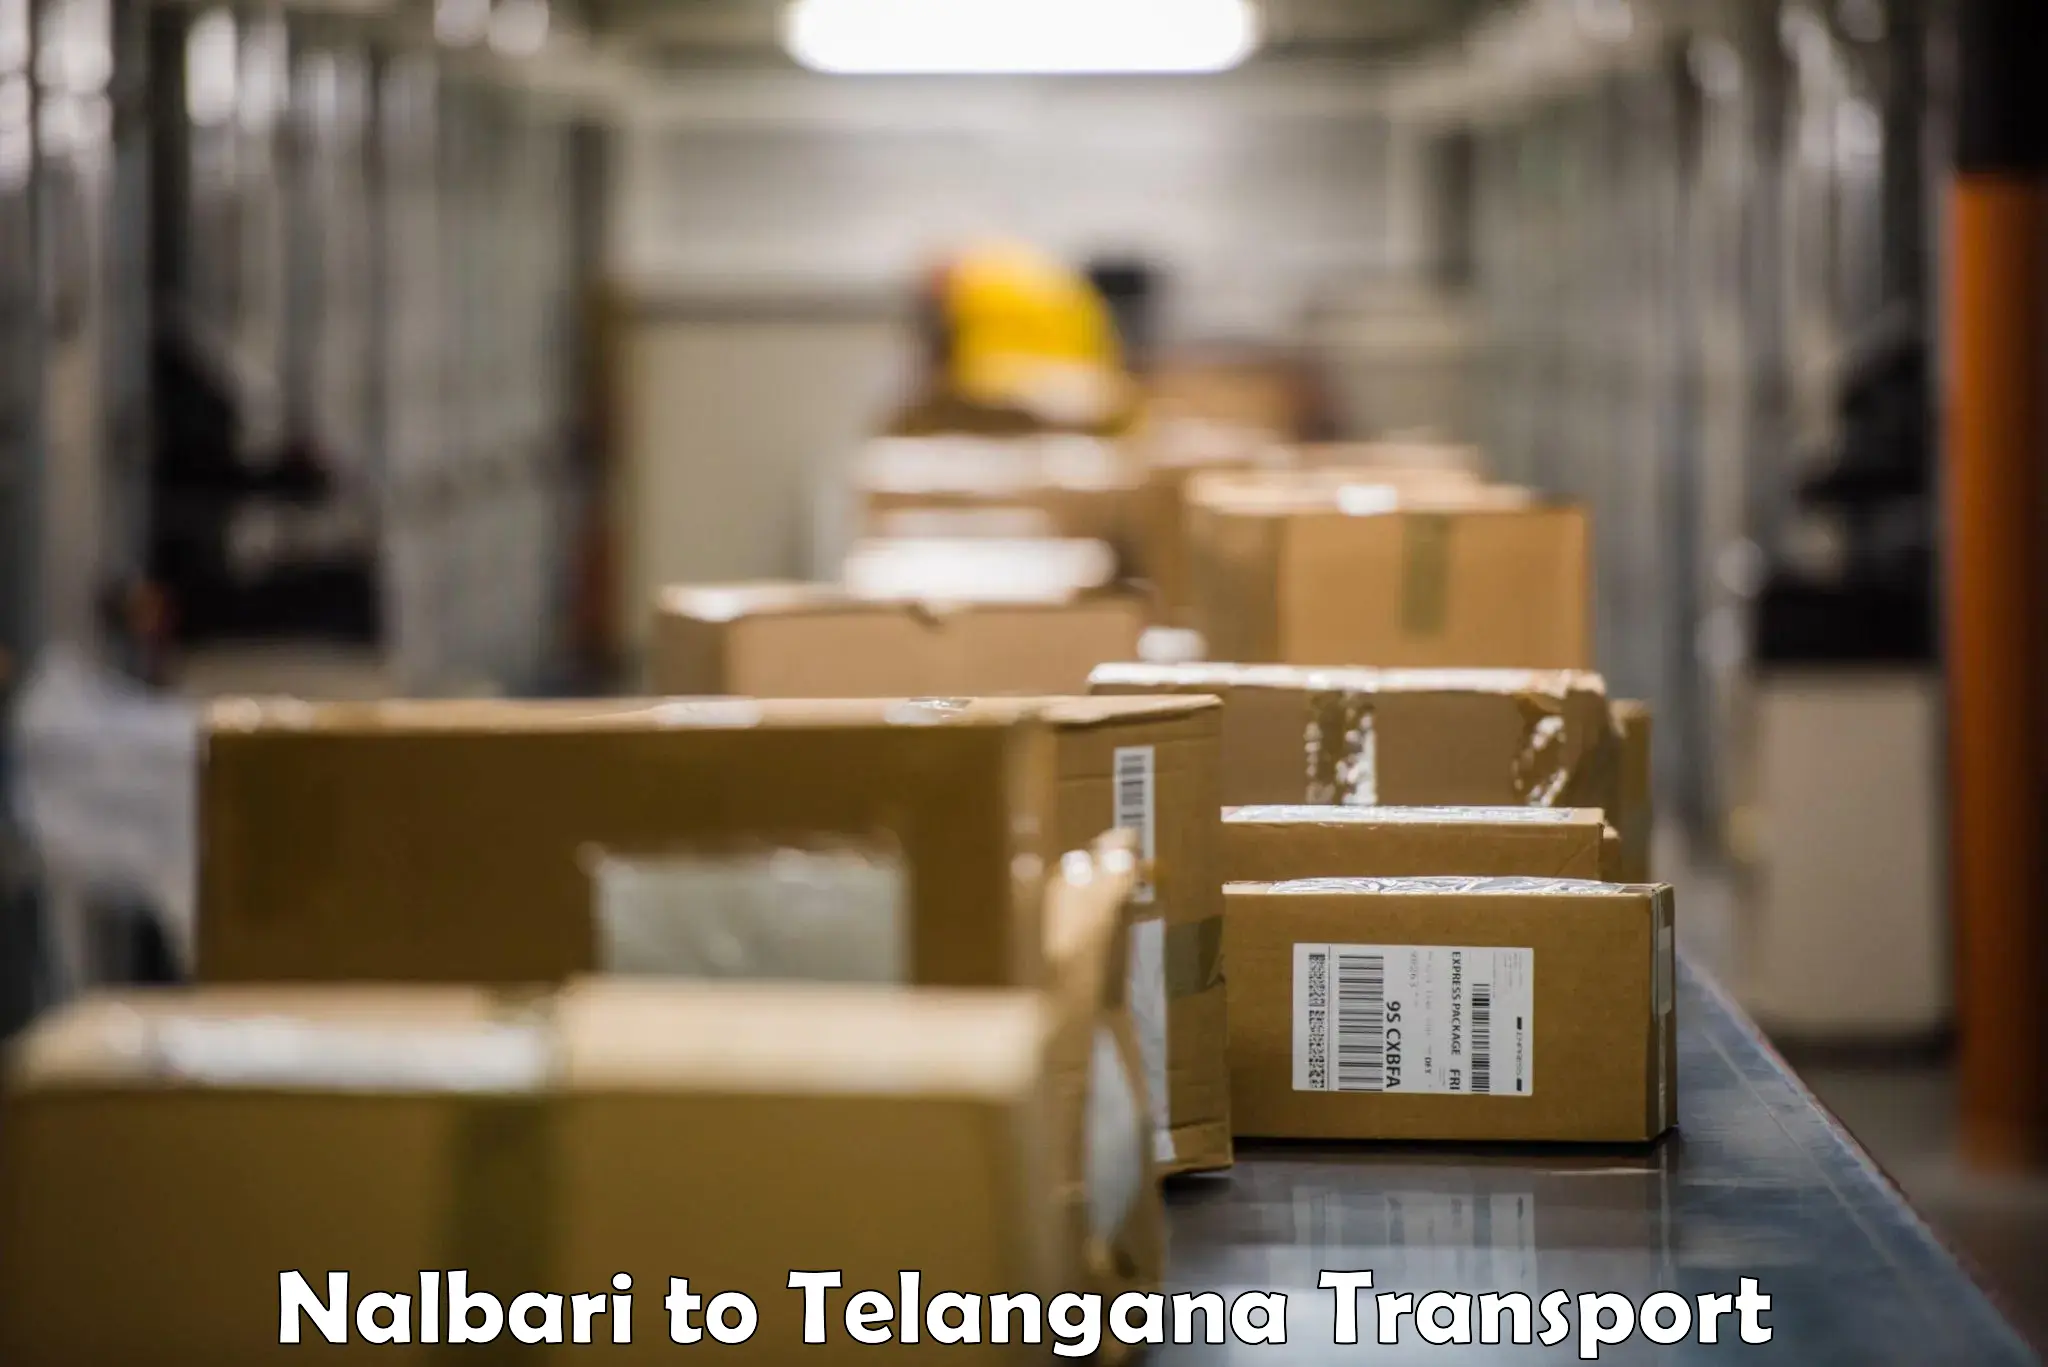 Furniture transport service Nalbari to Kosgi